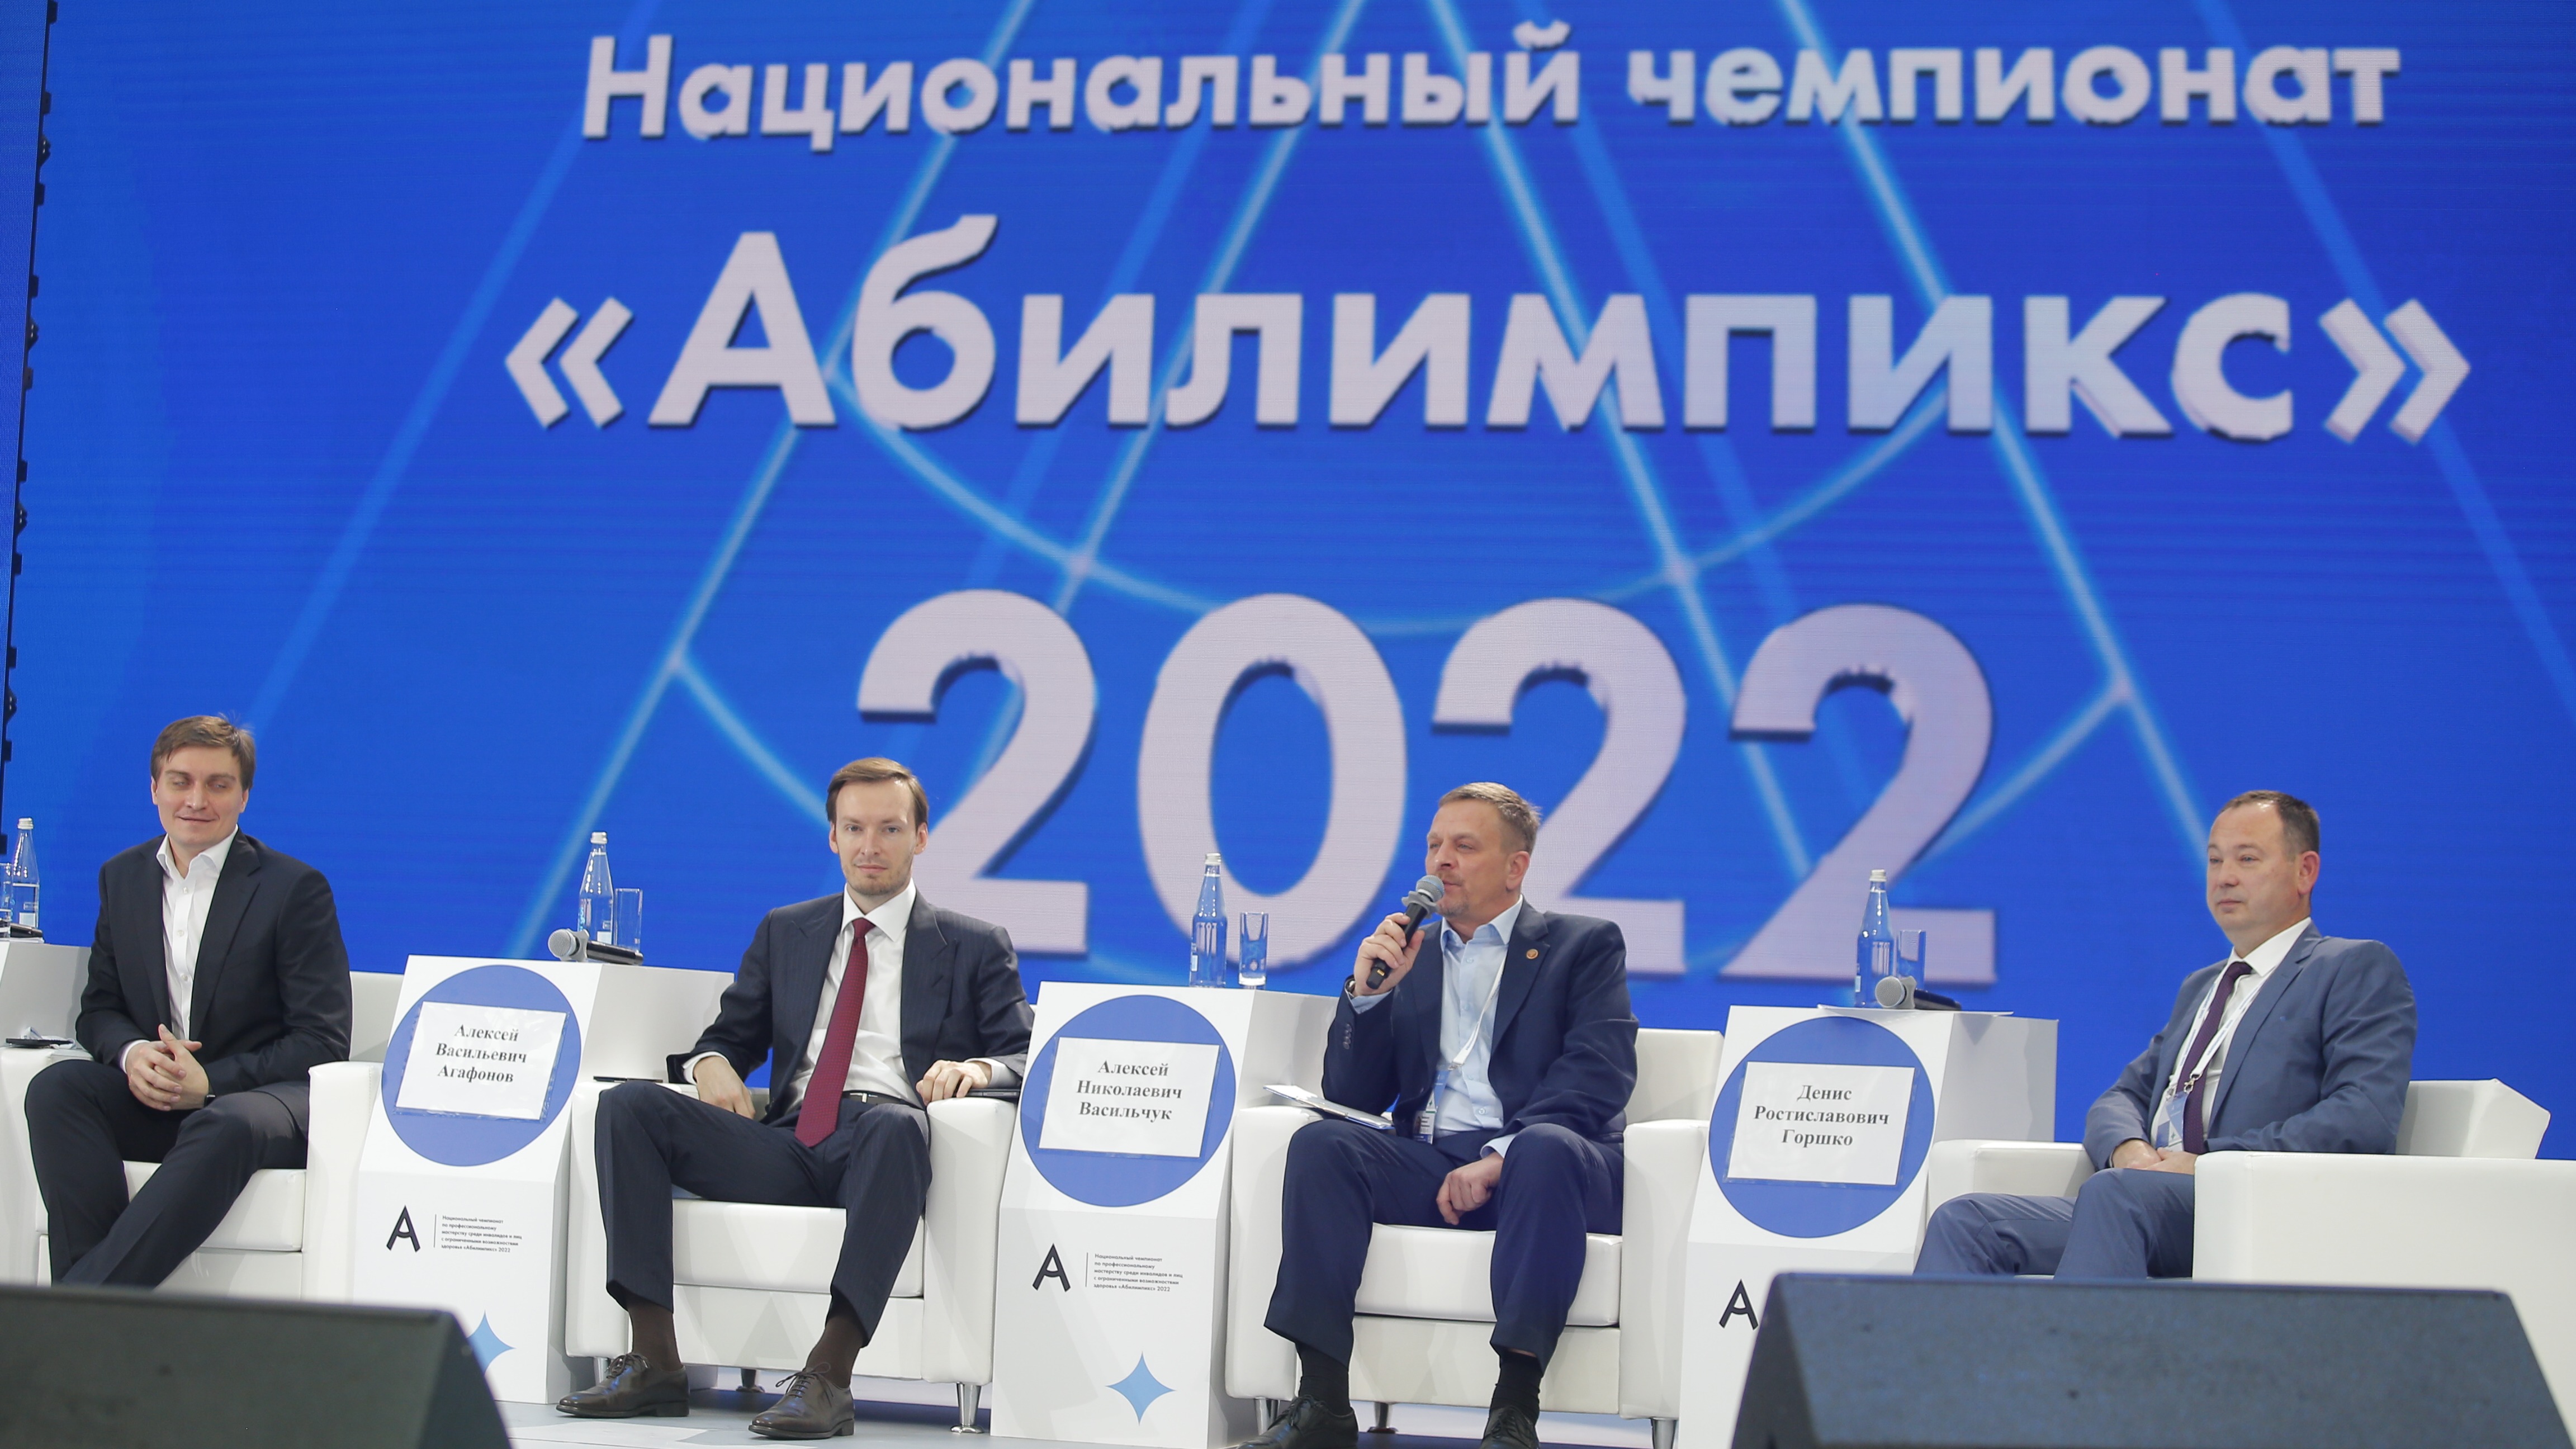 В Москве прошла пресс-конференция, посвященная открытию Национального чемпионата «Абилимпикс» 2022